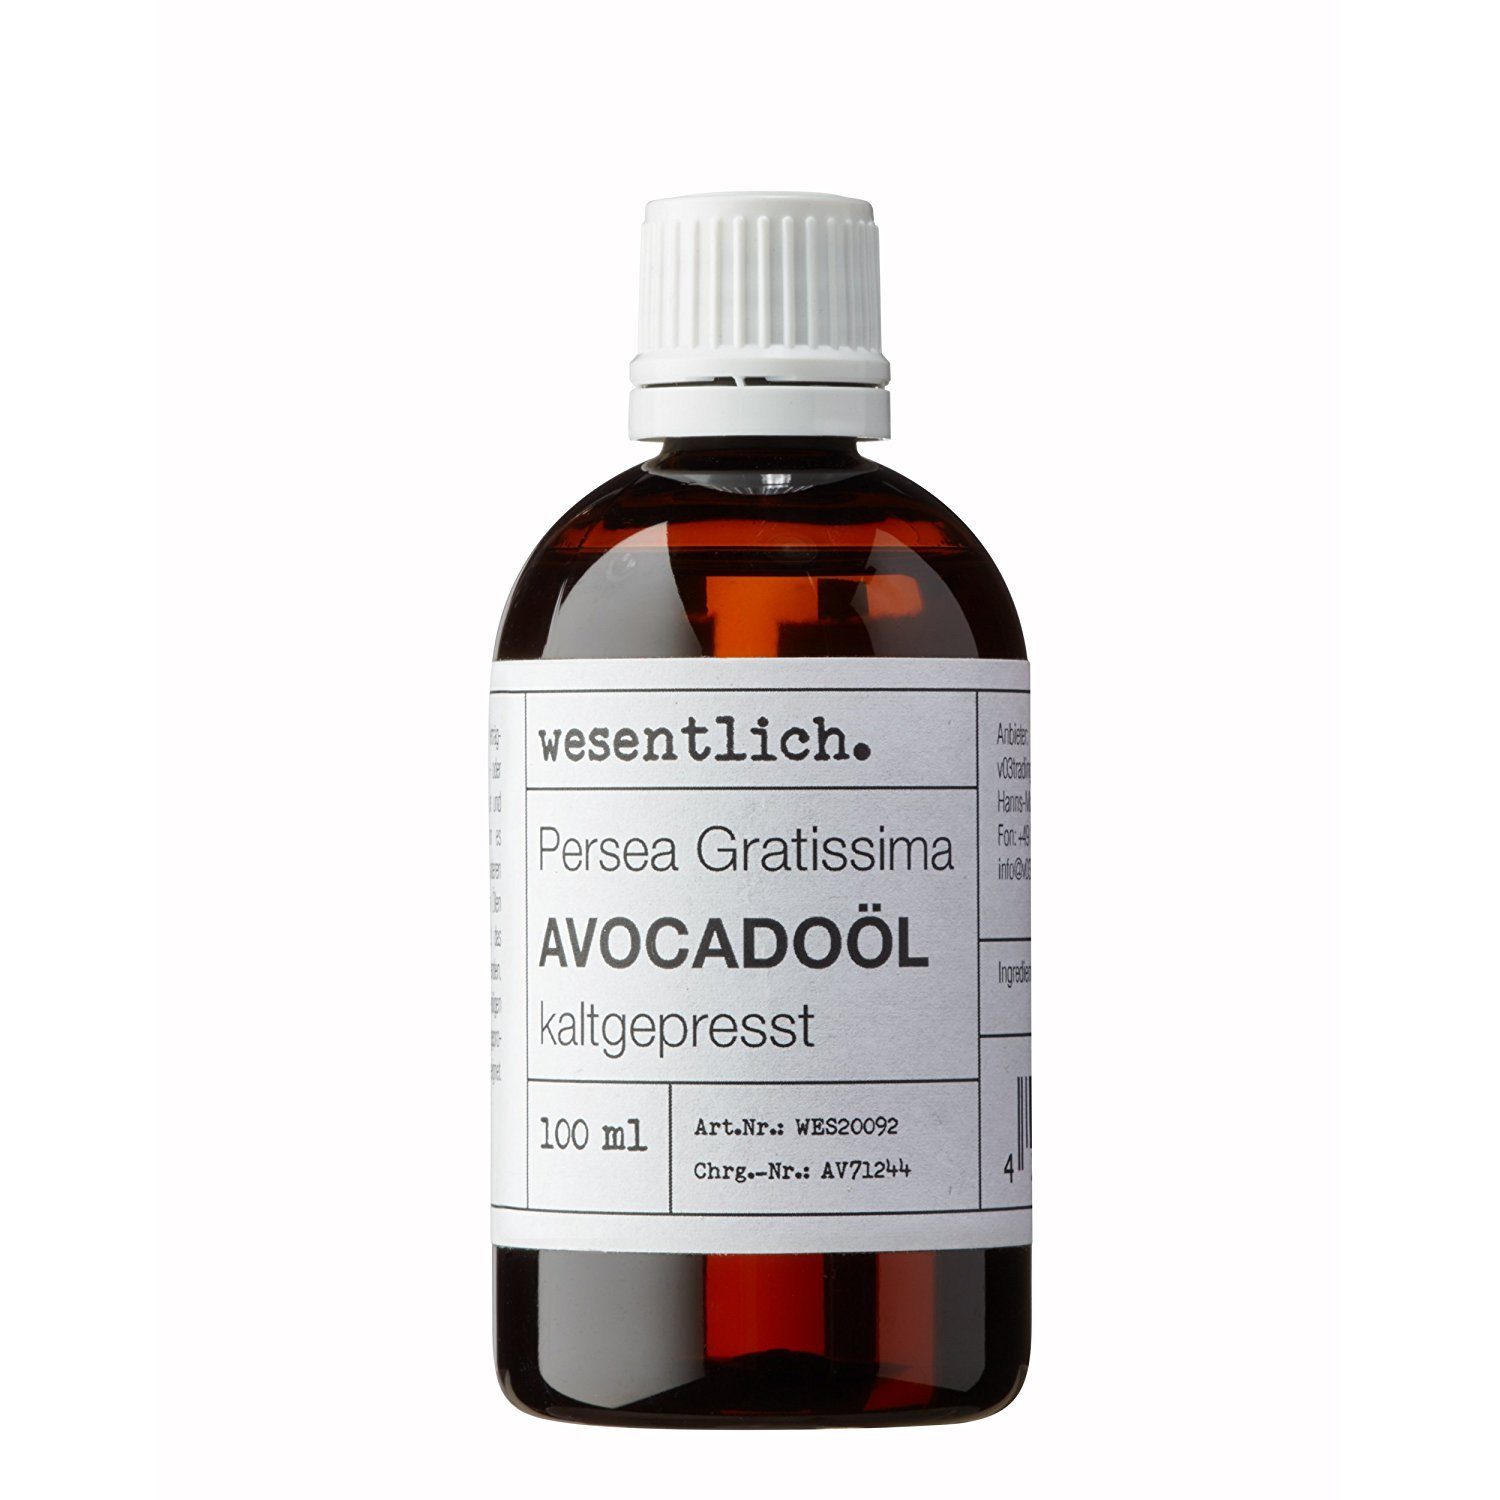 Öl wesentlich. - Körperöl von kaltgepresst reines (Persea Gratissima) Avocadoöl wesentlich. (100ml) 100%